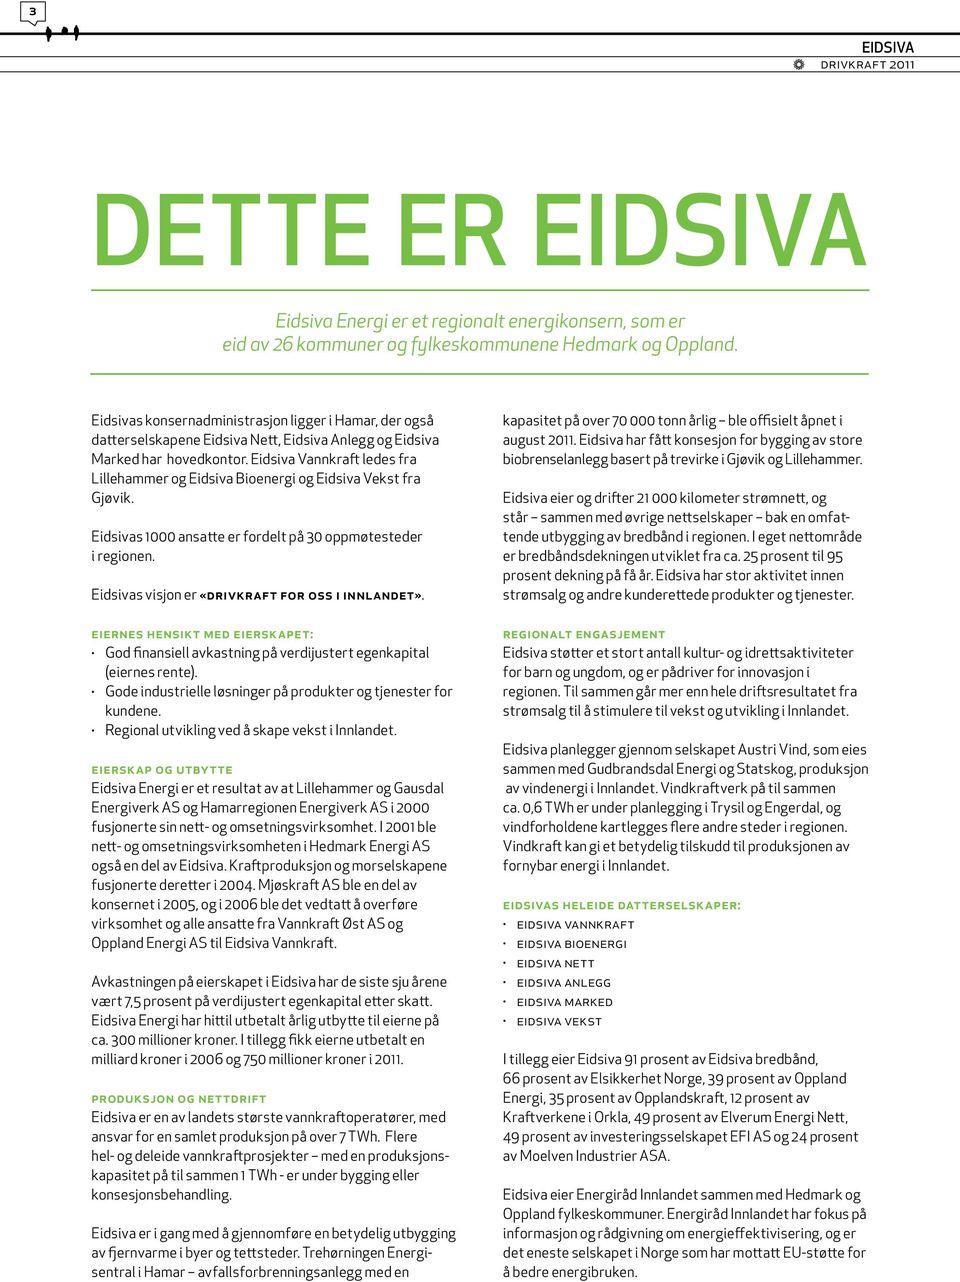 Eidsiva Vannkraft ledes fra Lillehammer og Eidsiva Bioenergi og Eidsiva Vekst fra Gjøvik. Eidsivas 1000 ansatte er fordelt på 30 oppmøtesteder i regionen.